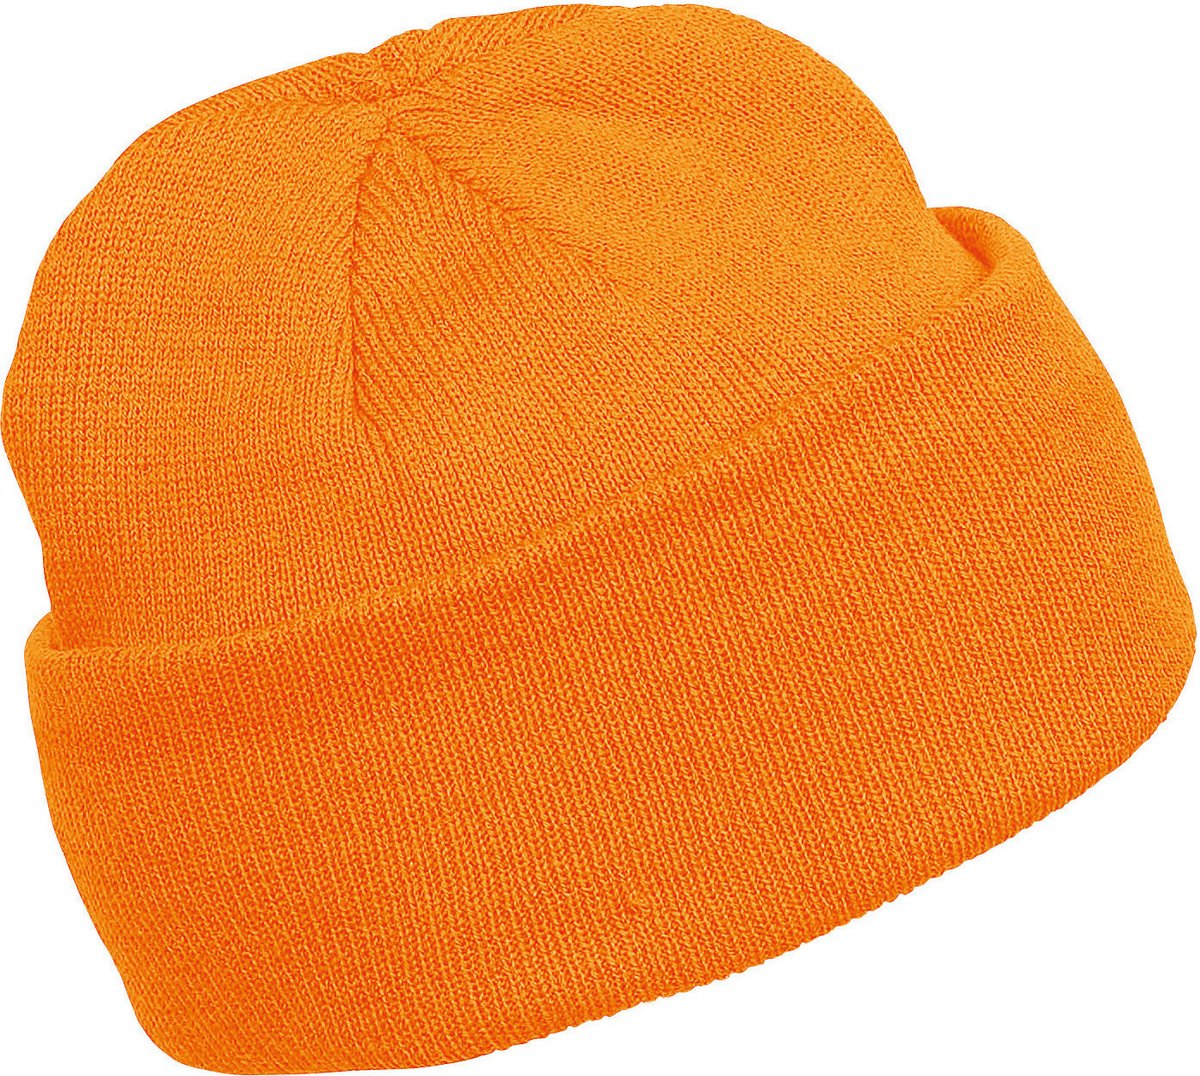 K-up Hats Wintermuts Beanie Yukon - oranje - heren/dames - sterk/zacht/licht gebreid 100% Acryl - Dames/herenmuts